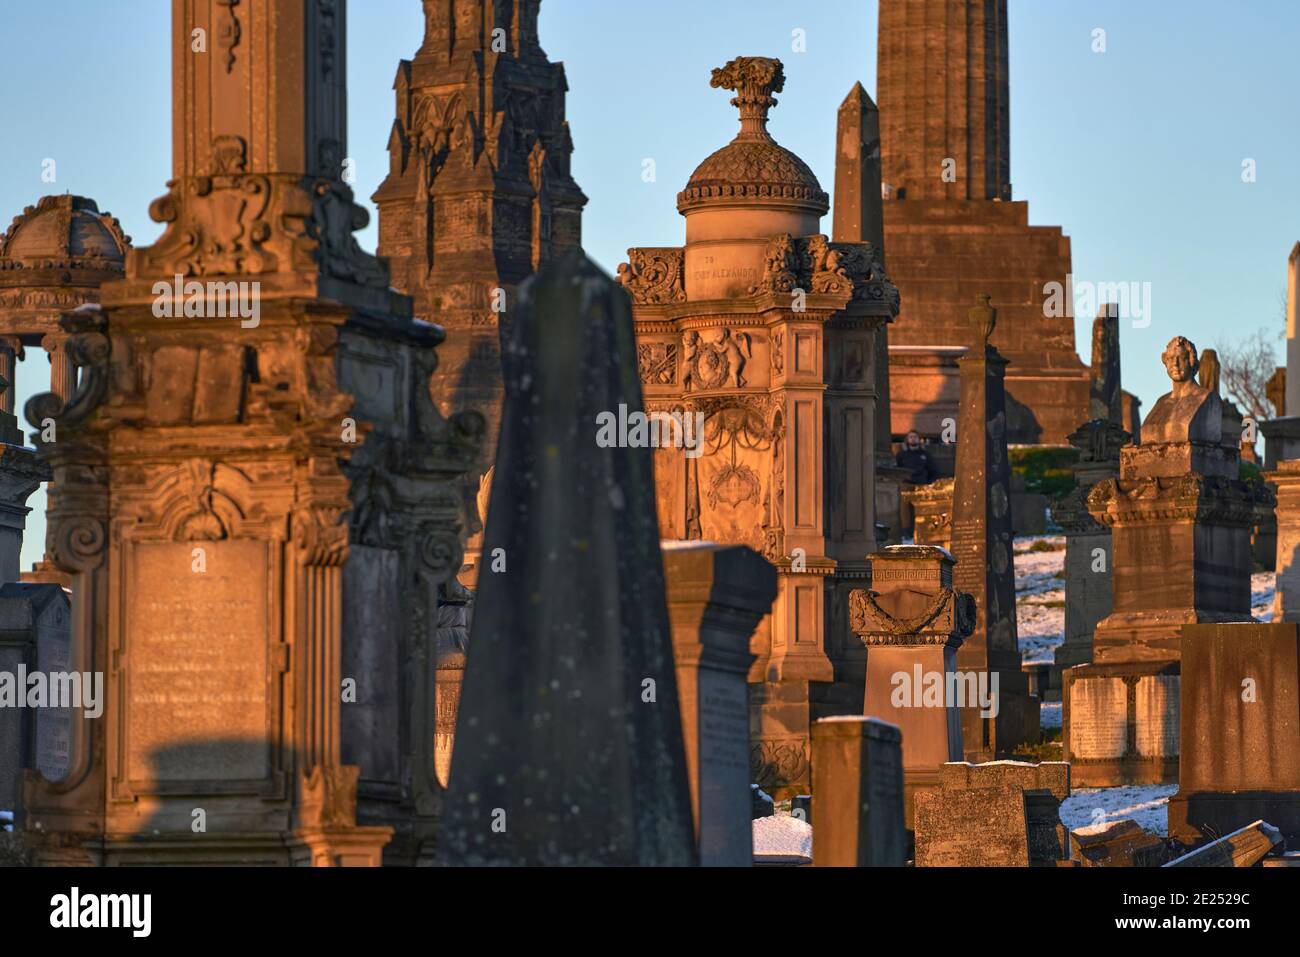 Gros plan d'un groupe de pierres angulaires et de monuments qui se sont emparés lors d'une journée hivernale enneigée dans la nécropole de Glasgow. Banque D'Images